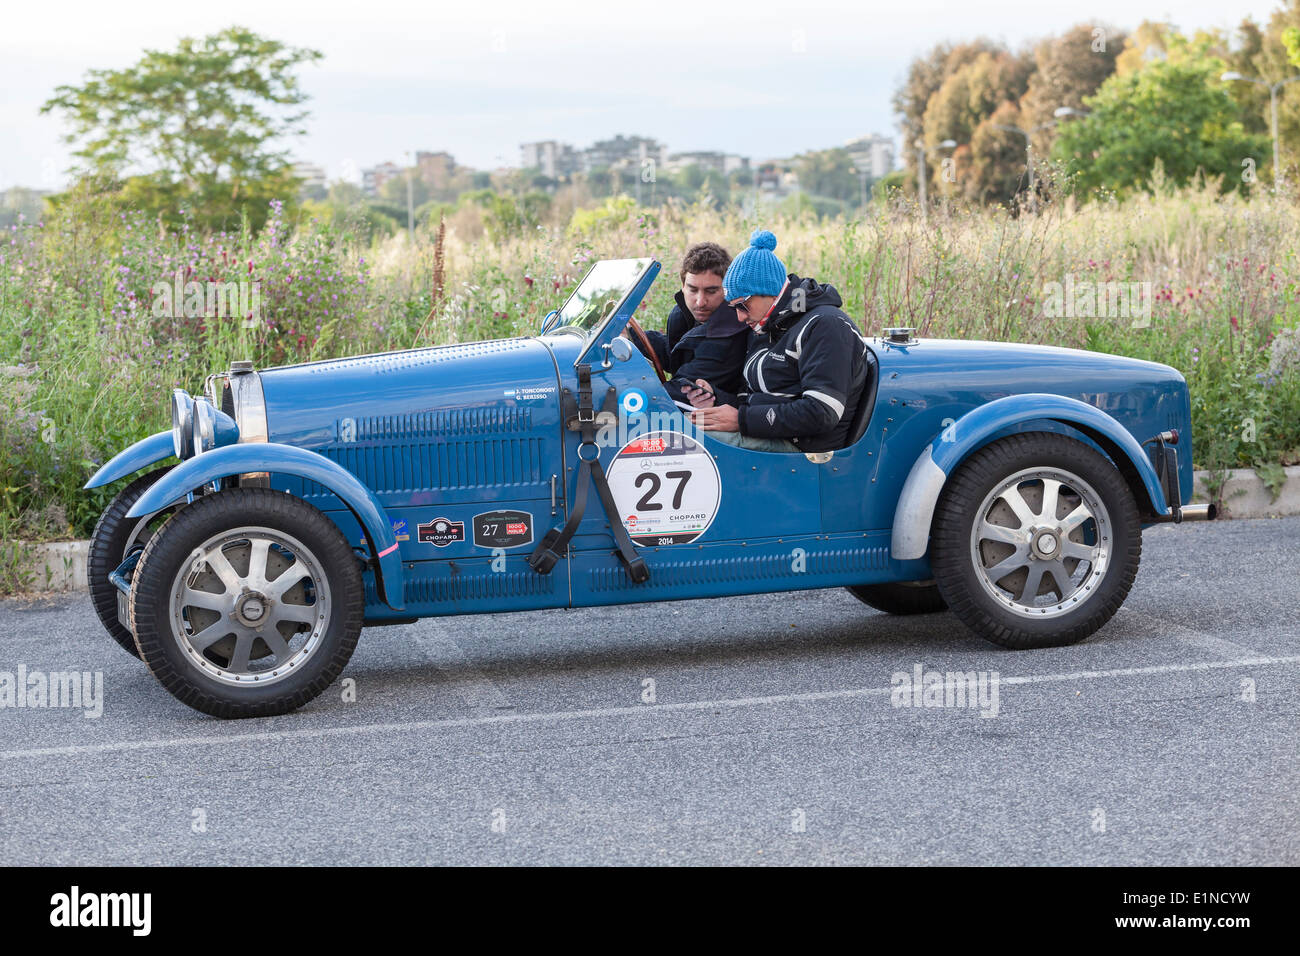 Un 1927 Bugatti alla Mille Miglia auto classica del rally 1000 miglia per vetture costruite dal 1927 al 1957 tenuto ogni anno in Italia. Foto Stock